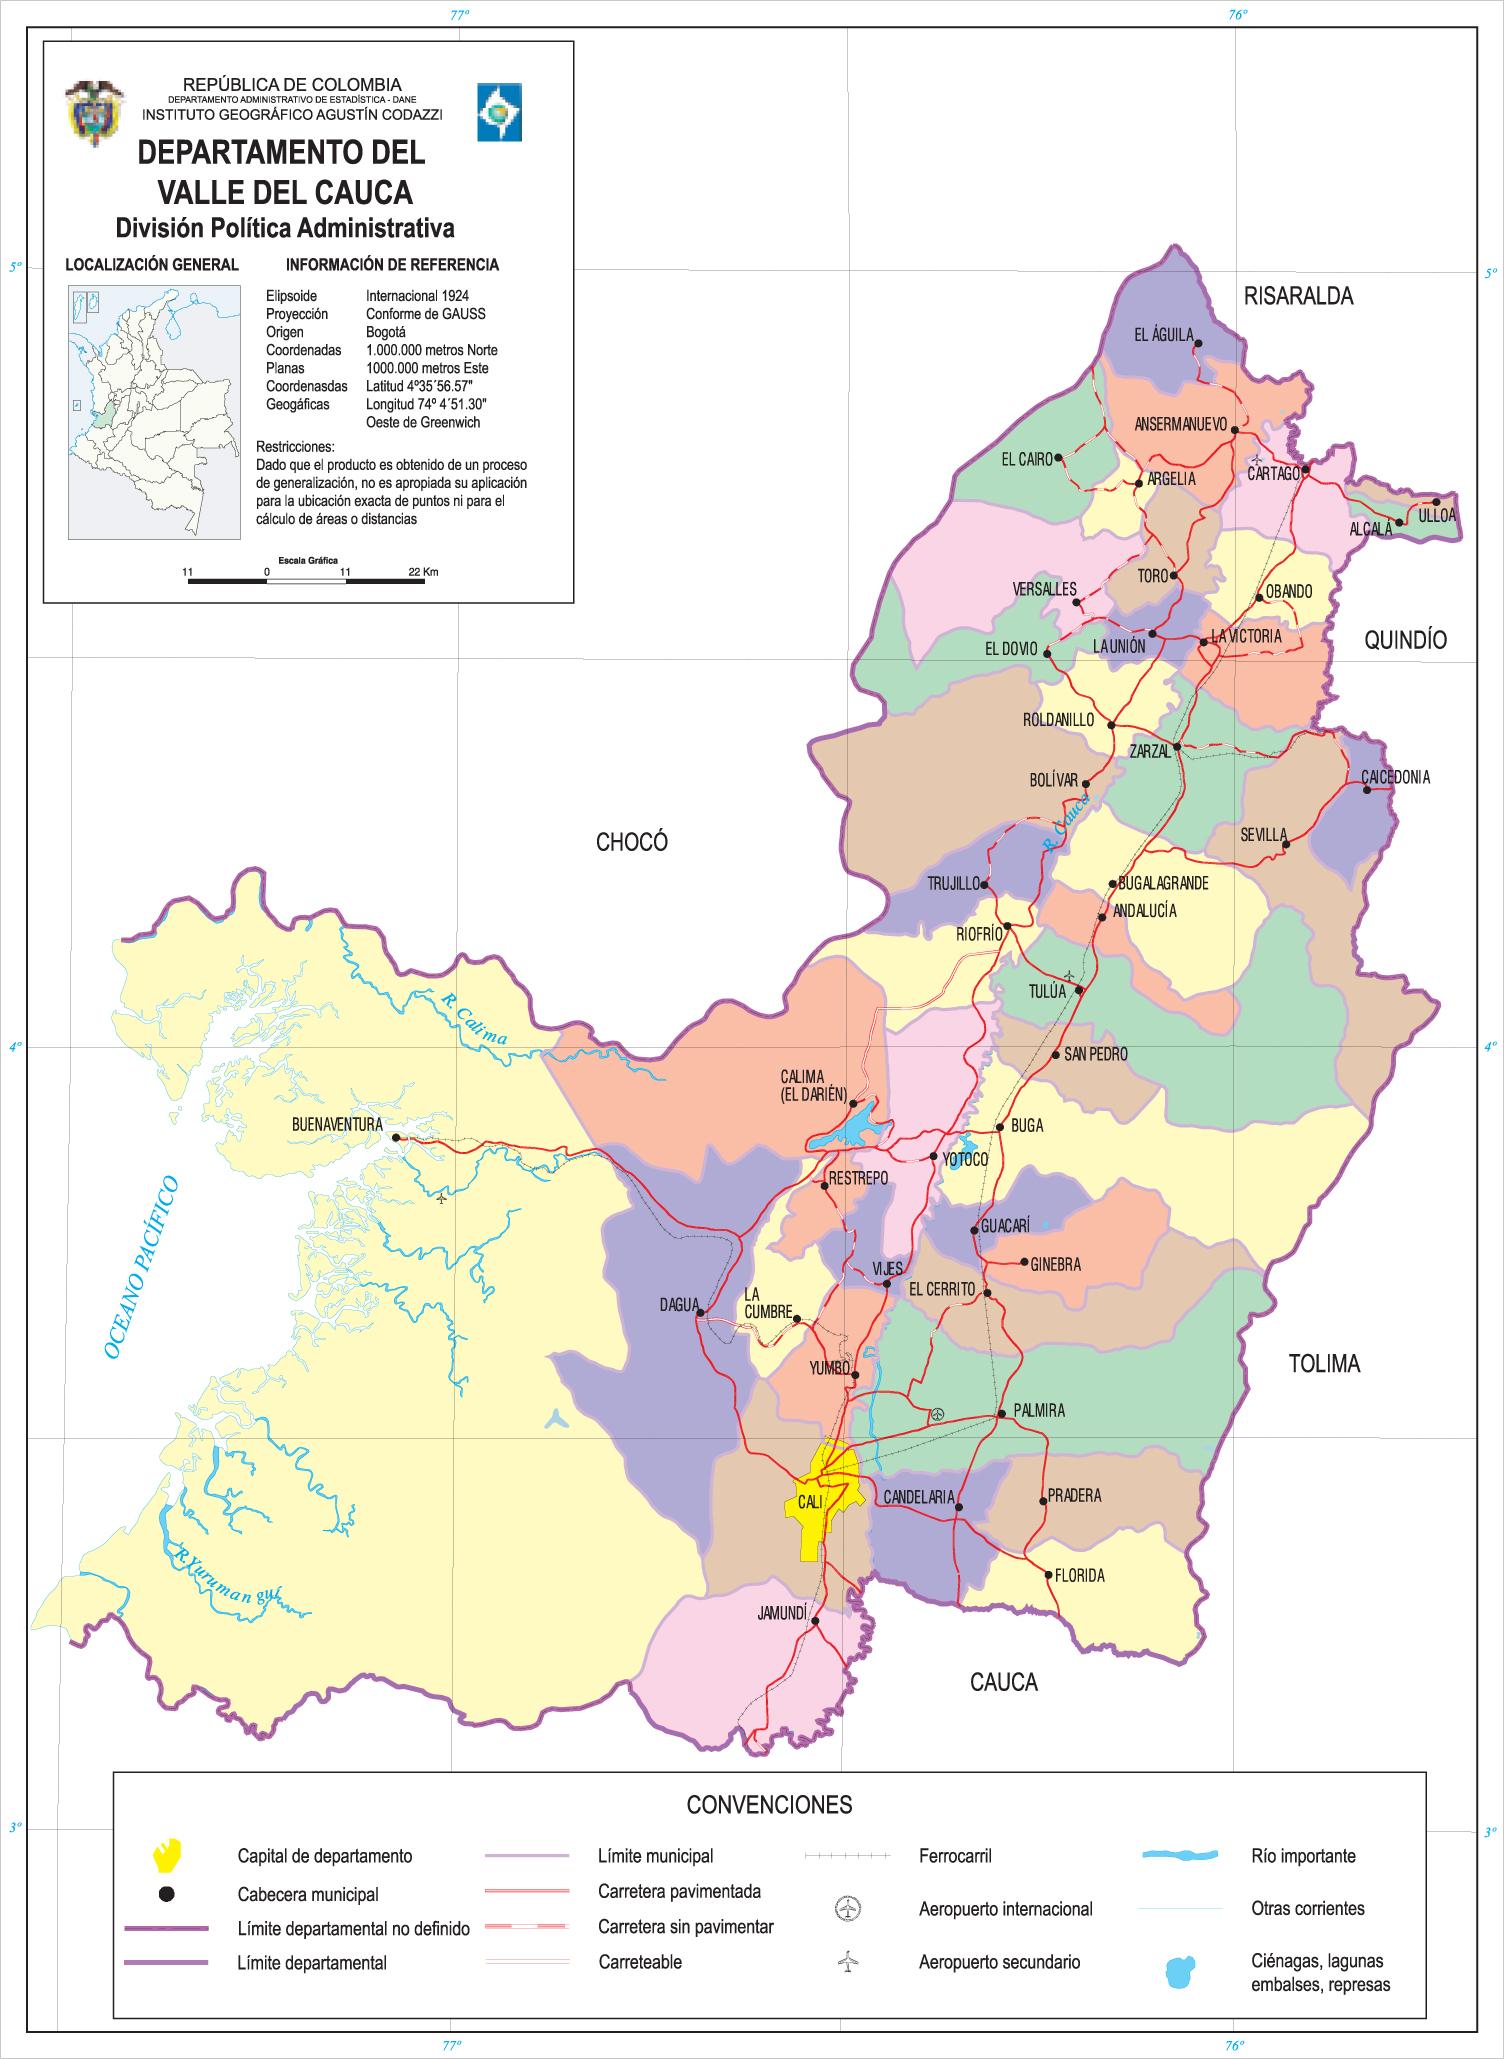 Mapa del departamento del Valle del Cauca